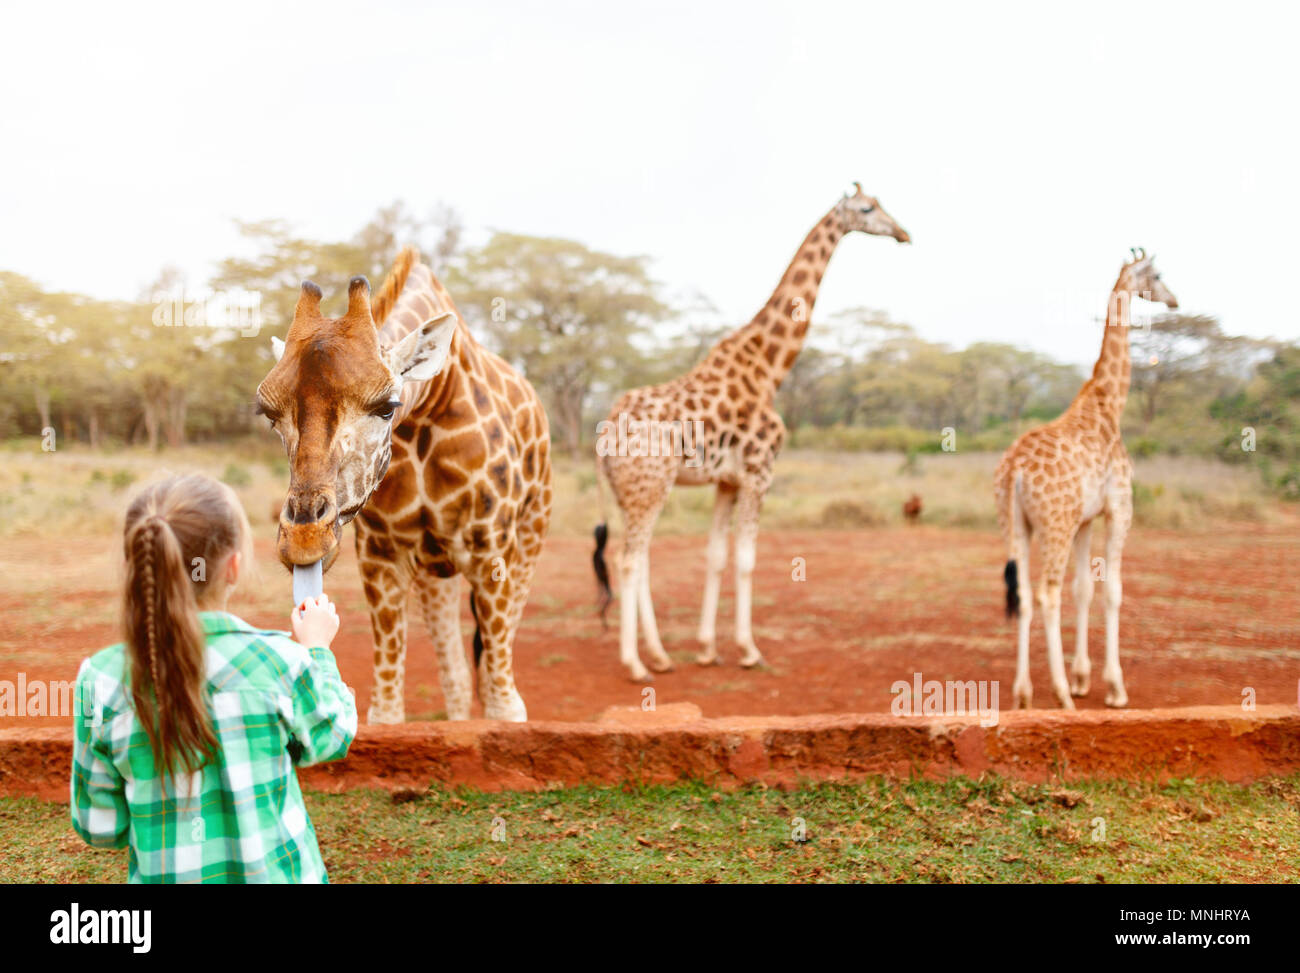 Cute little girl nourrir les girafes en Afrique Banque D'Images